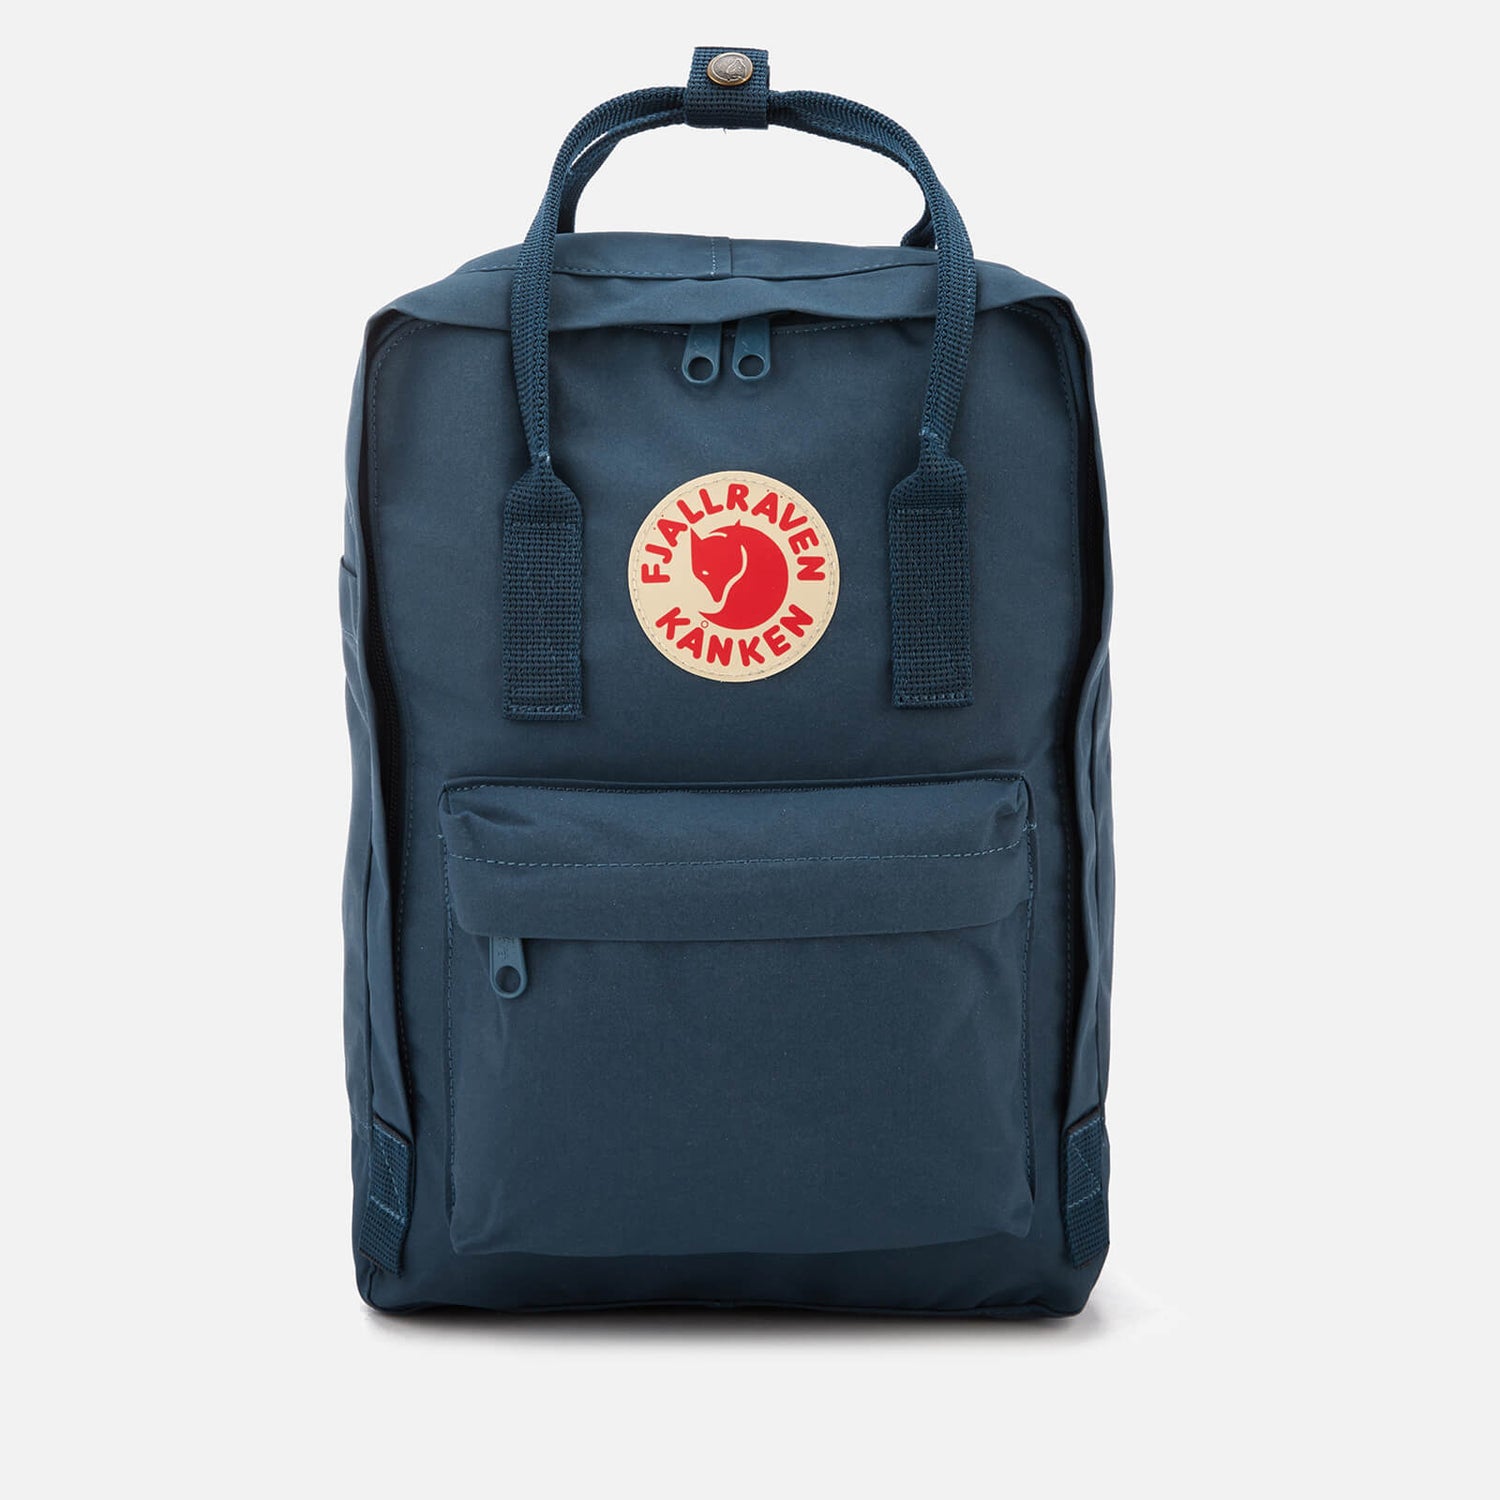 Fjallraven 13 Inch Laptop Backpack - Royal Blue